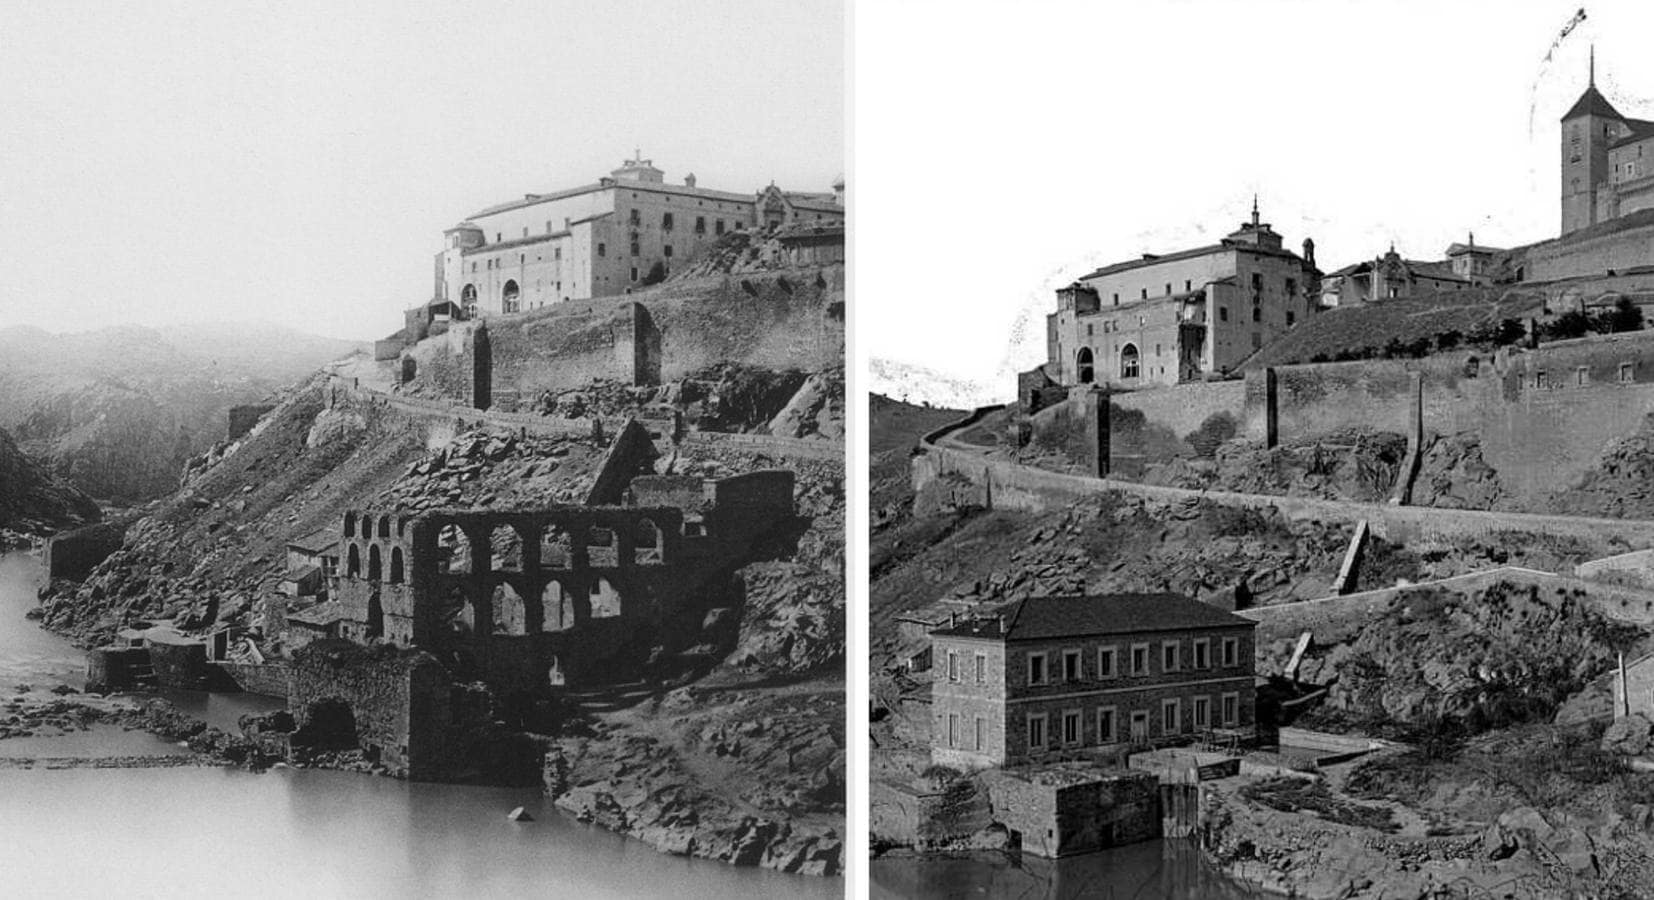 El Artificio antes de 1868 y la posterior Elevadora de 1870. Fotos de Ferrier (Col. Particular) y Laurent (Archivo Municipal de Toledo)